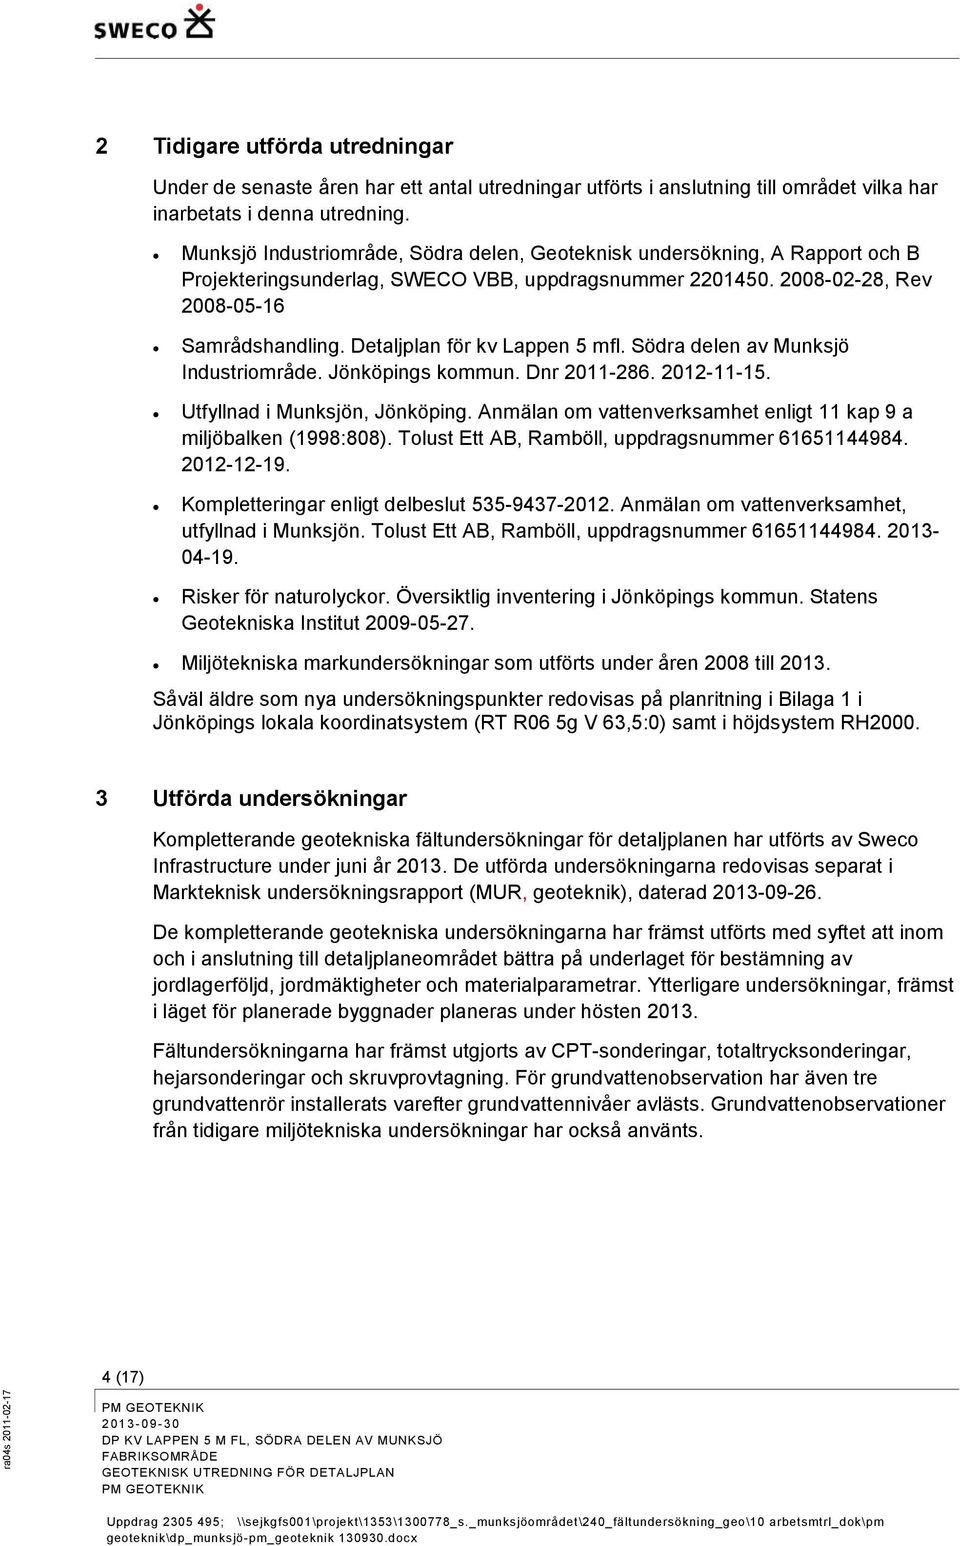 Detaljplan för kv Lappen 5 mfl. Södra delen av Munksjö Industriområde. Jönköpings kommun. Dnr 2011-286. 2012-11-15. Utfyllnad i Munksjön, Jönköping.